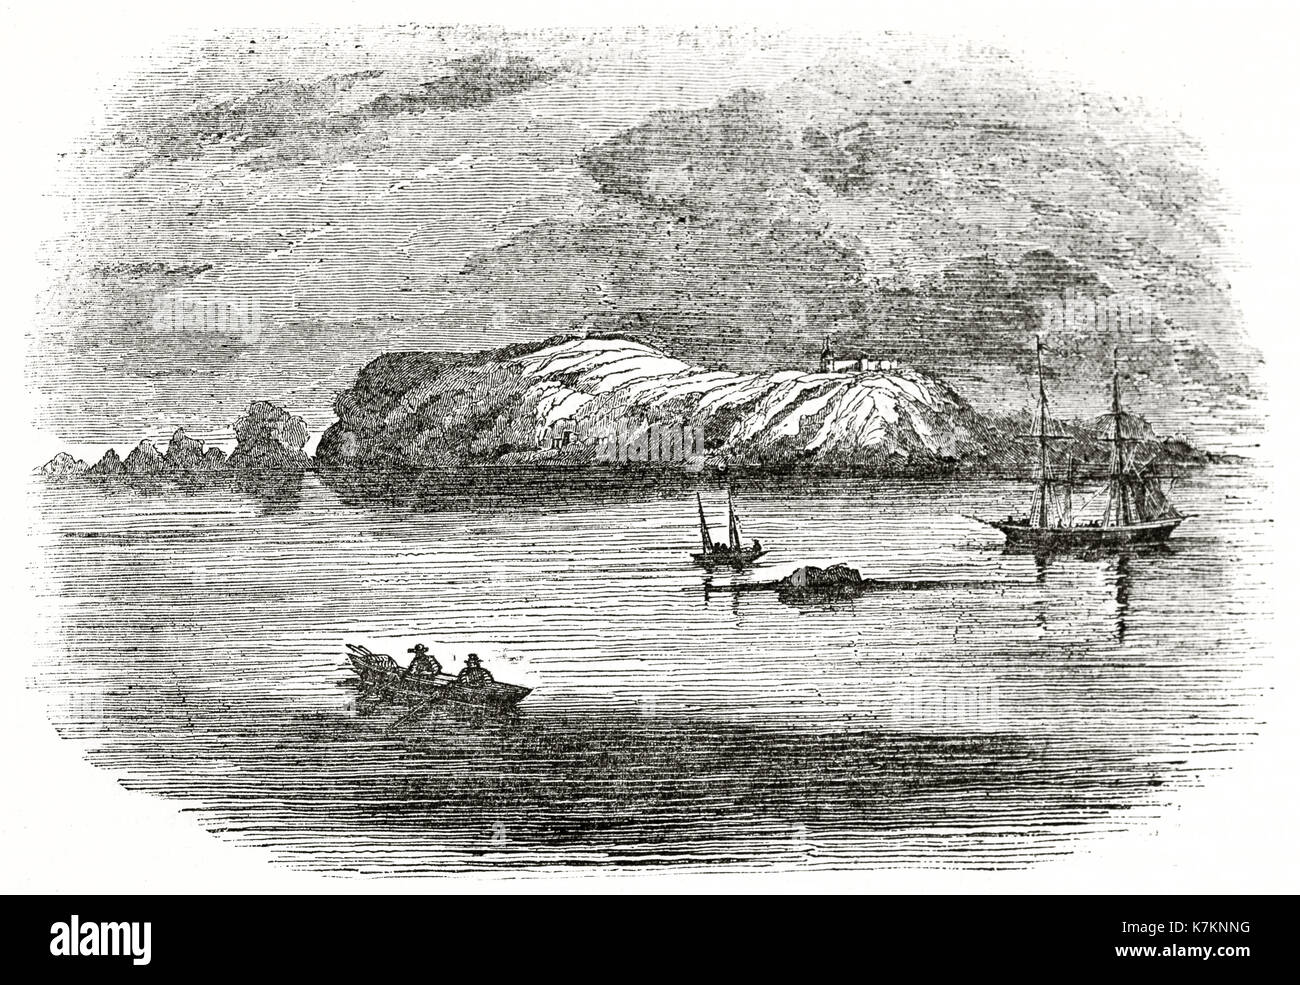 Alte Ansicht von Alderney Island, Tv Inseln. Von unbekannter Autor, Publ. Auf dem Penny Magazine, London, 1837 Stockfoto